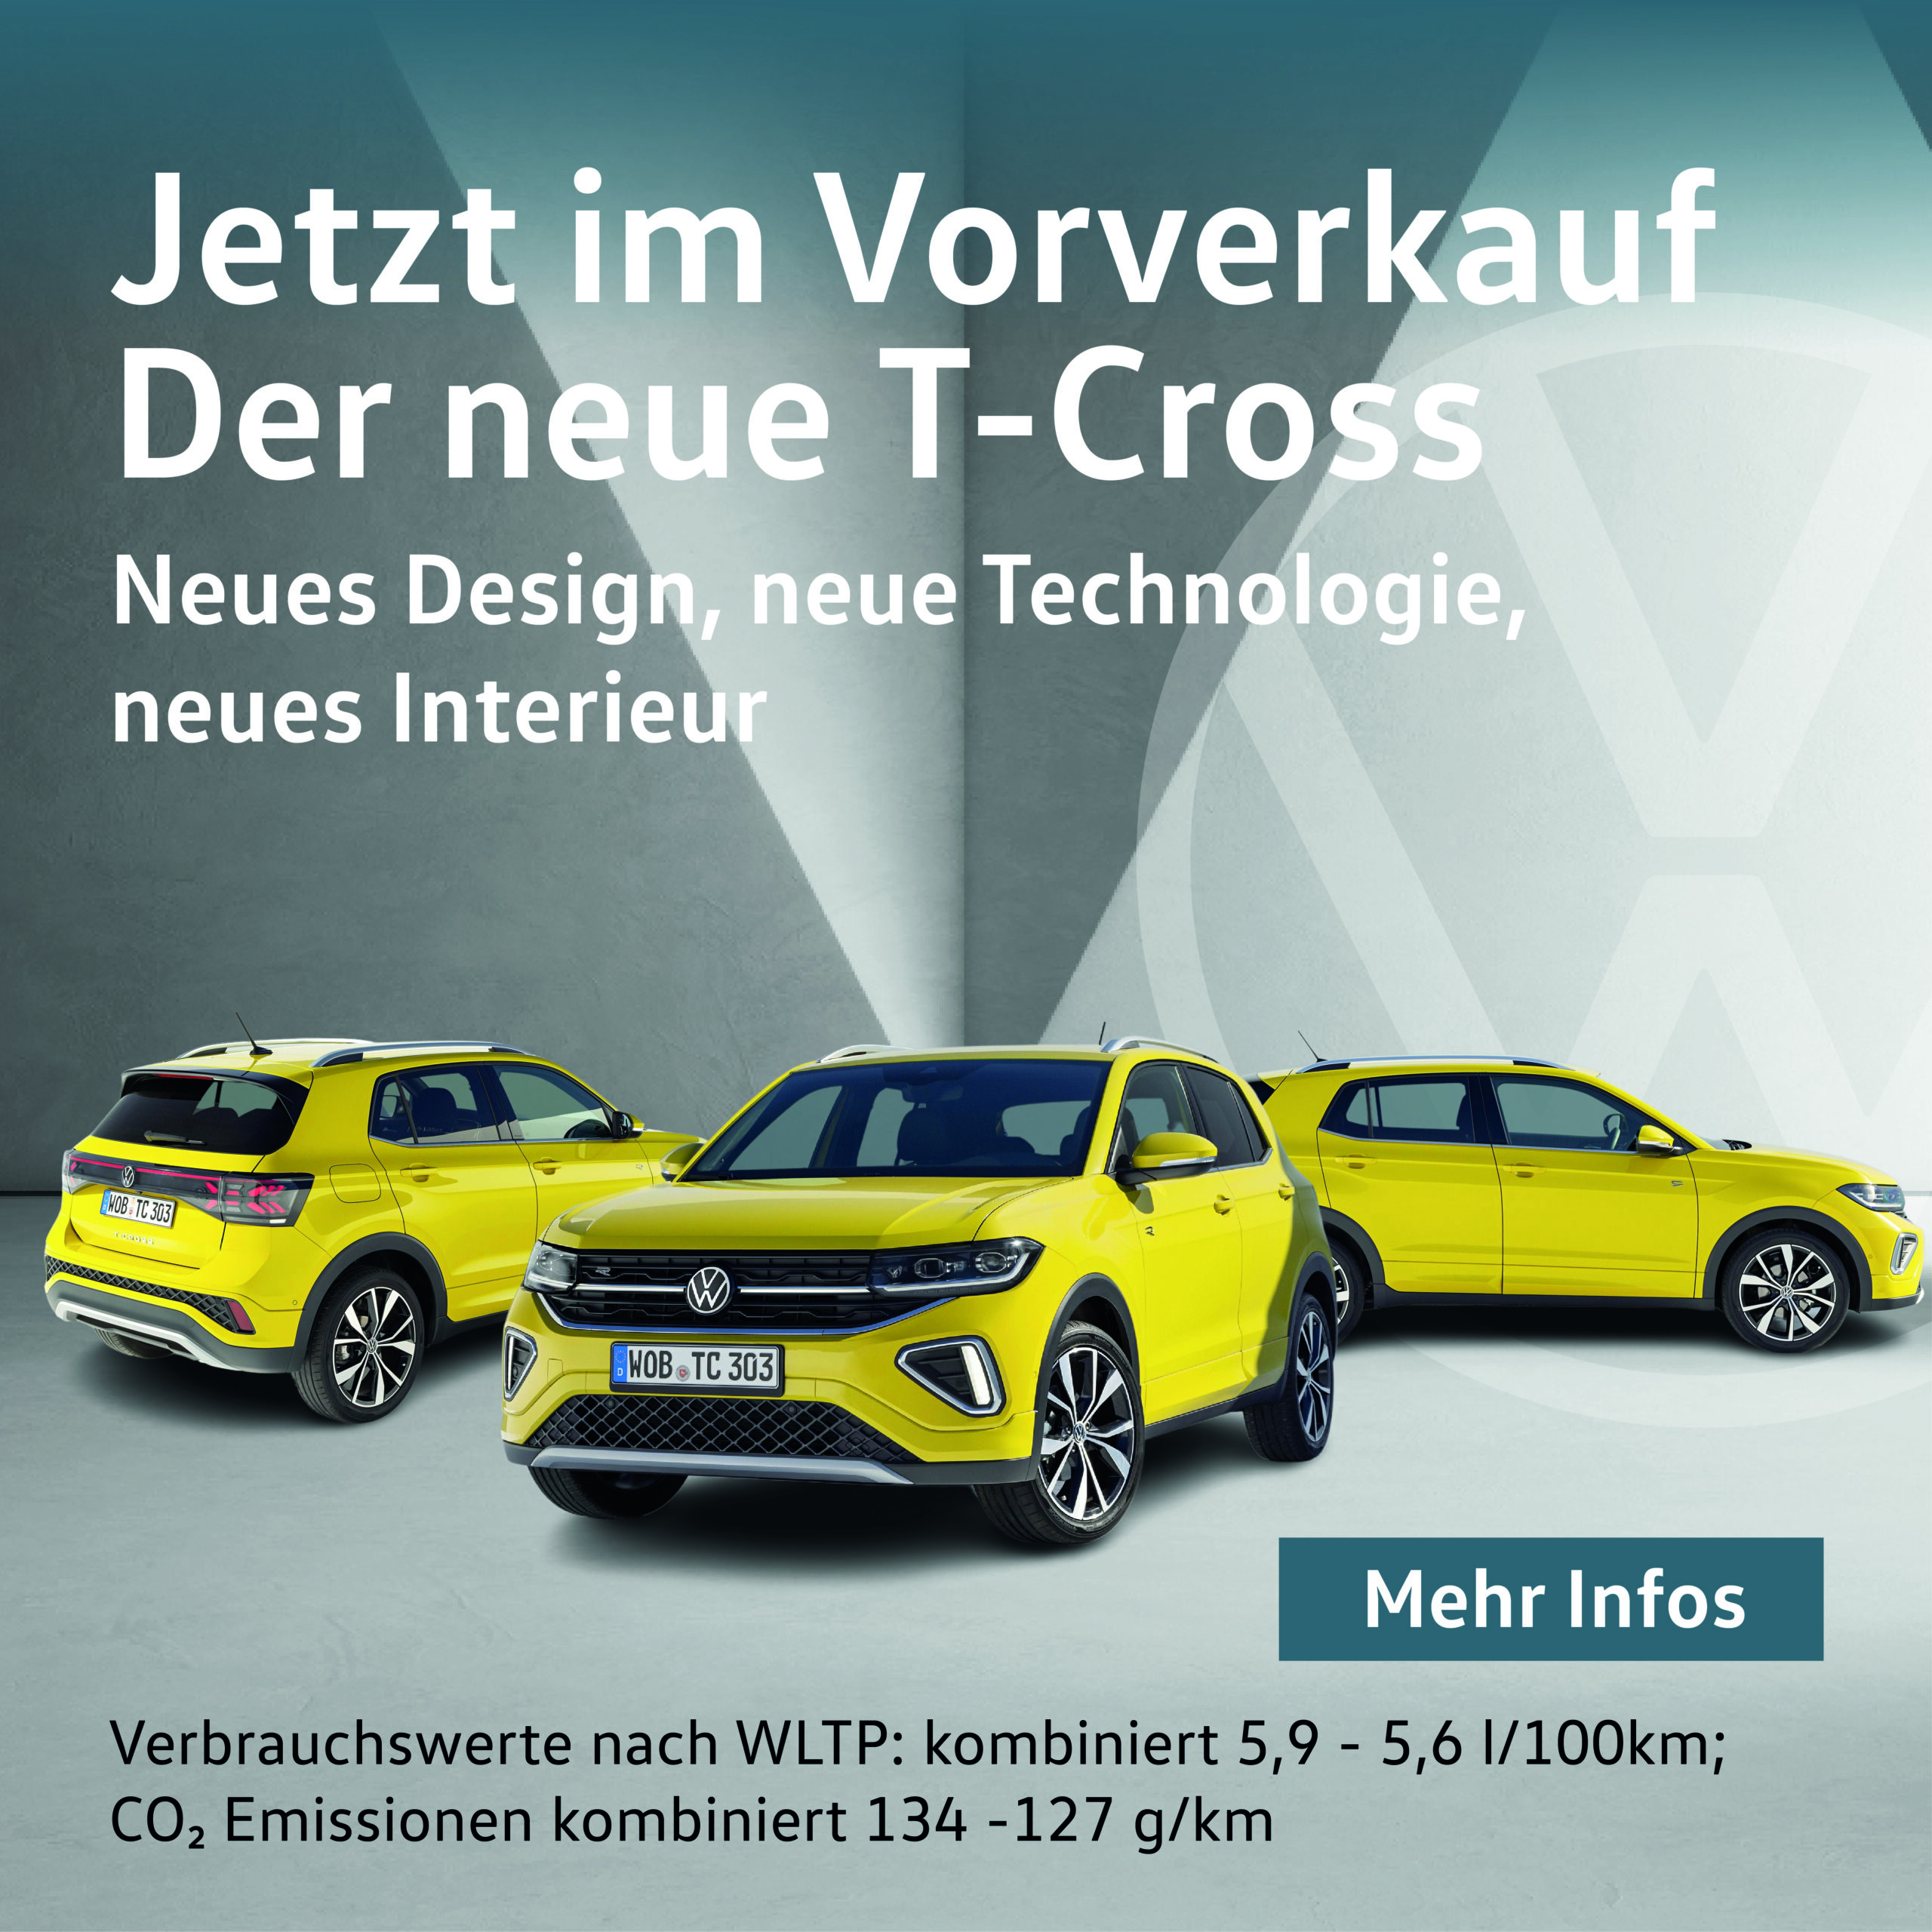 Der neue T-Cross  Autohaus Abicht GmbH